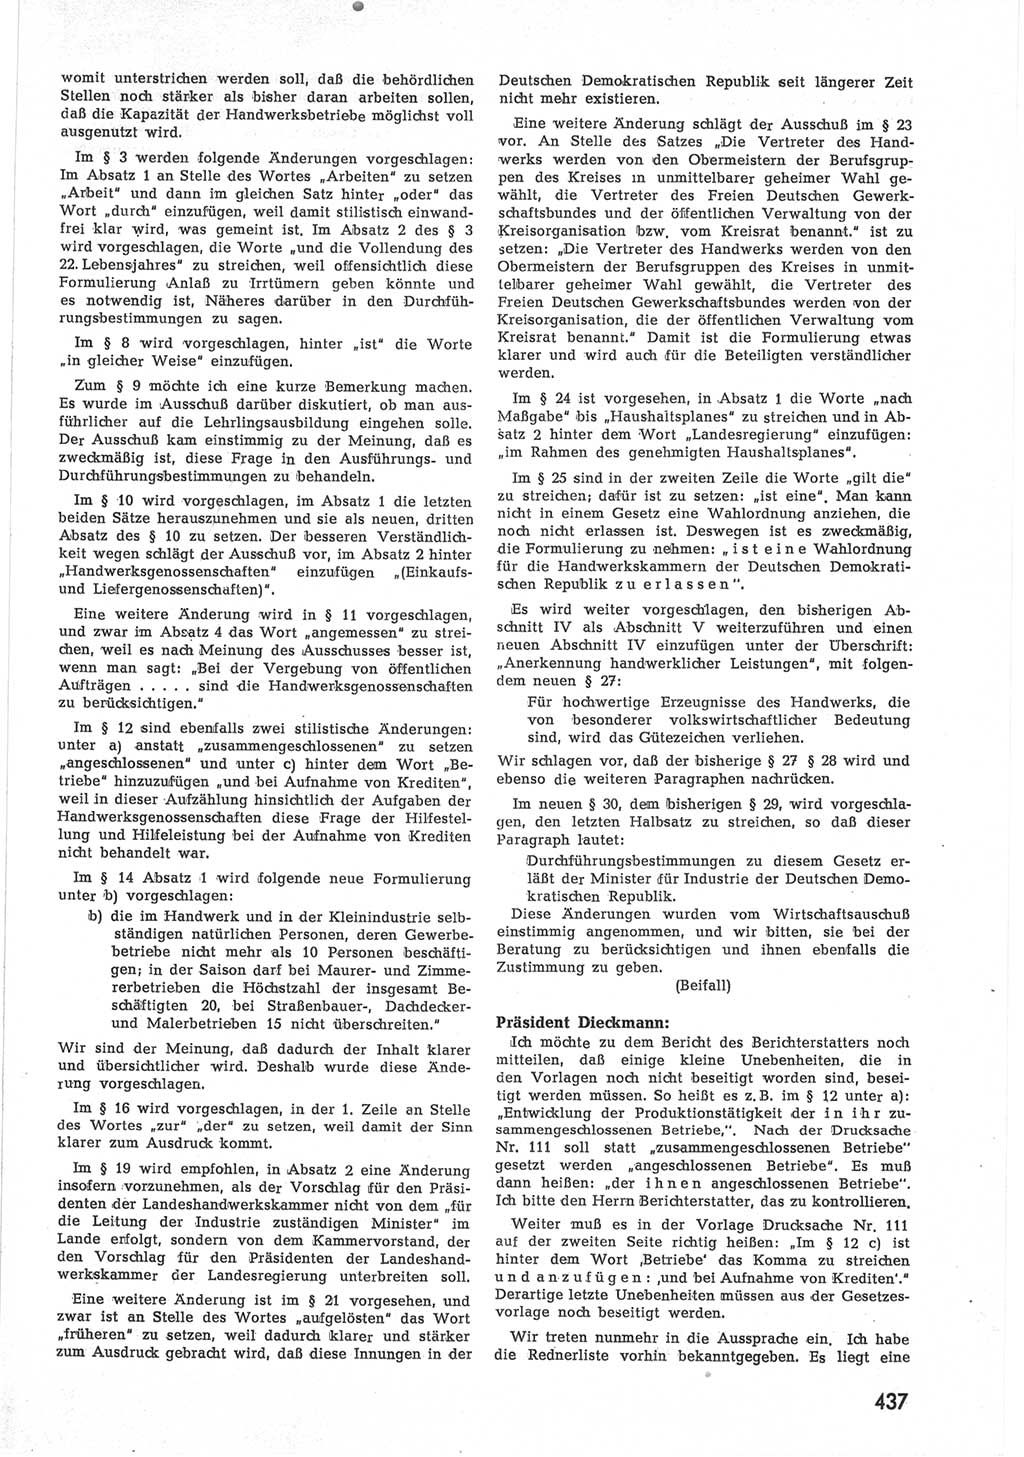 Provisorische Volkskammer (VK) der Deutschen Demokratischen Republik (DDR) 1949-1950, Dokument 455 (Prov. VK DDR 1949-1950, Dok. 455)